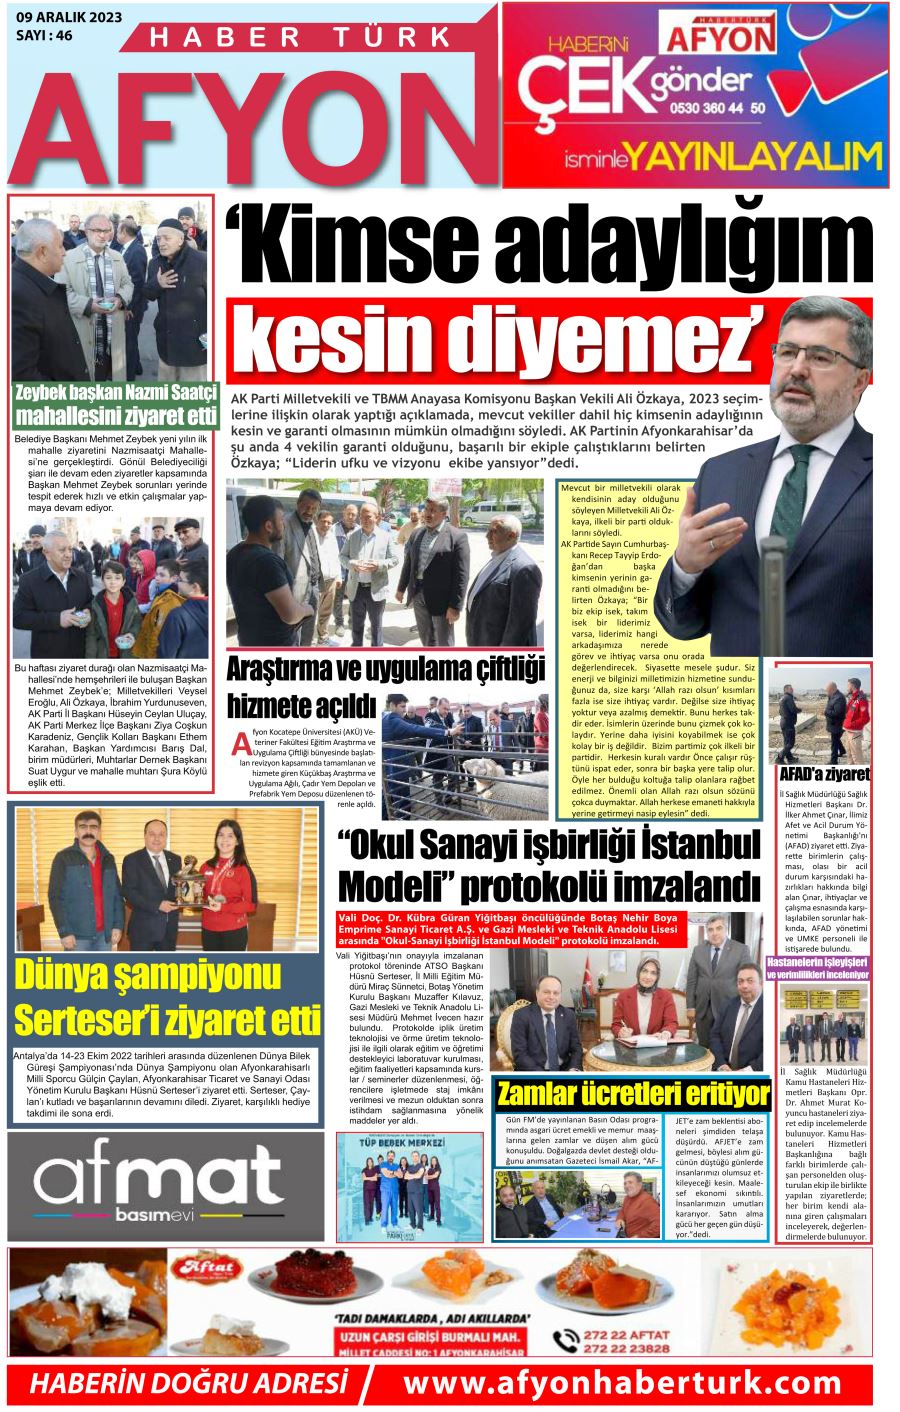 Afyonhabertürk e-gazete